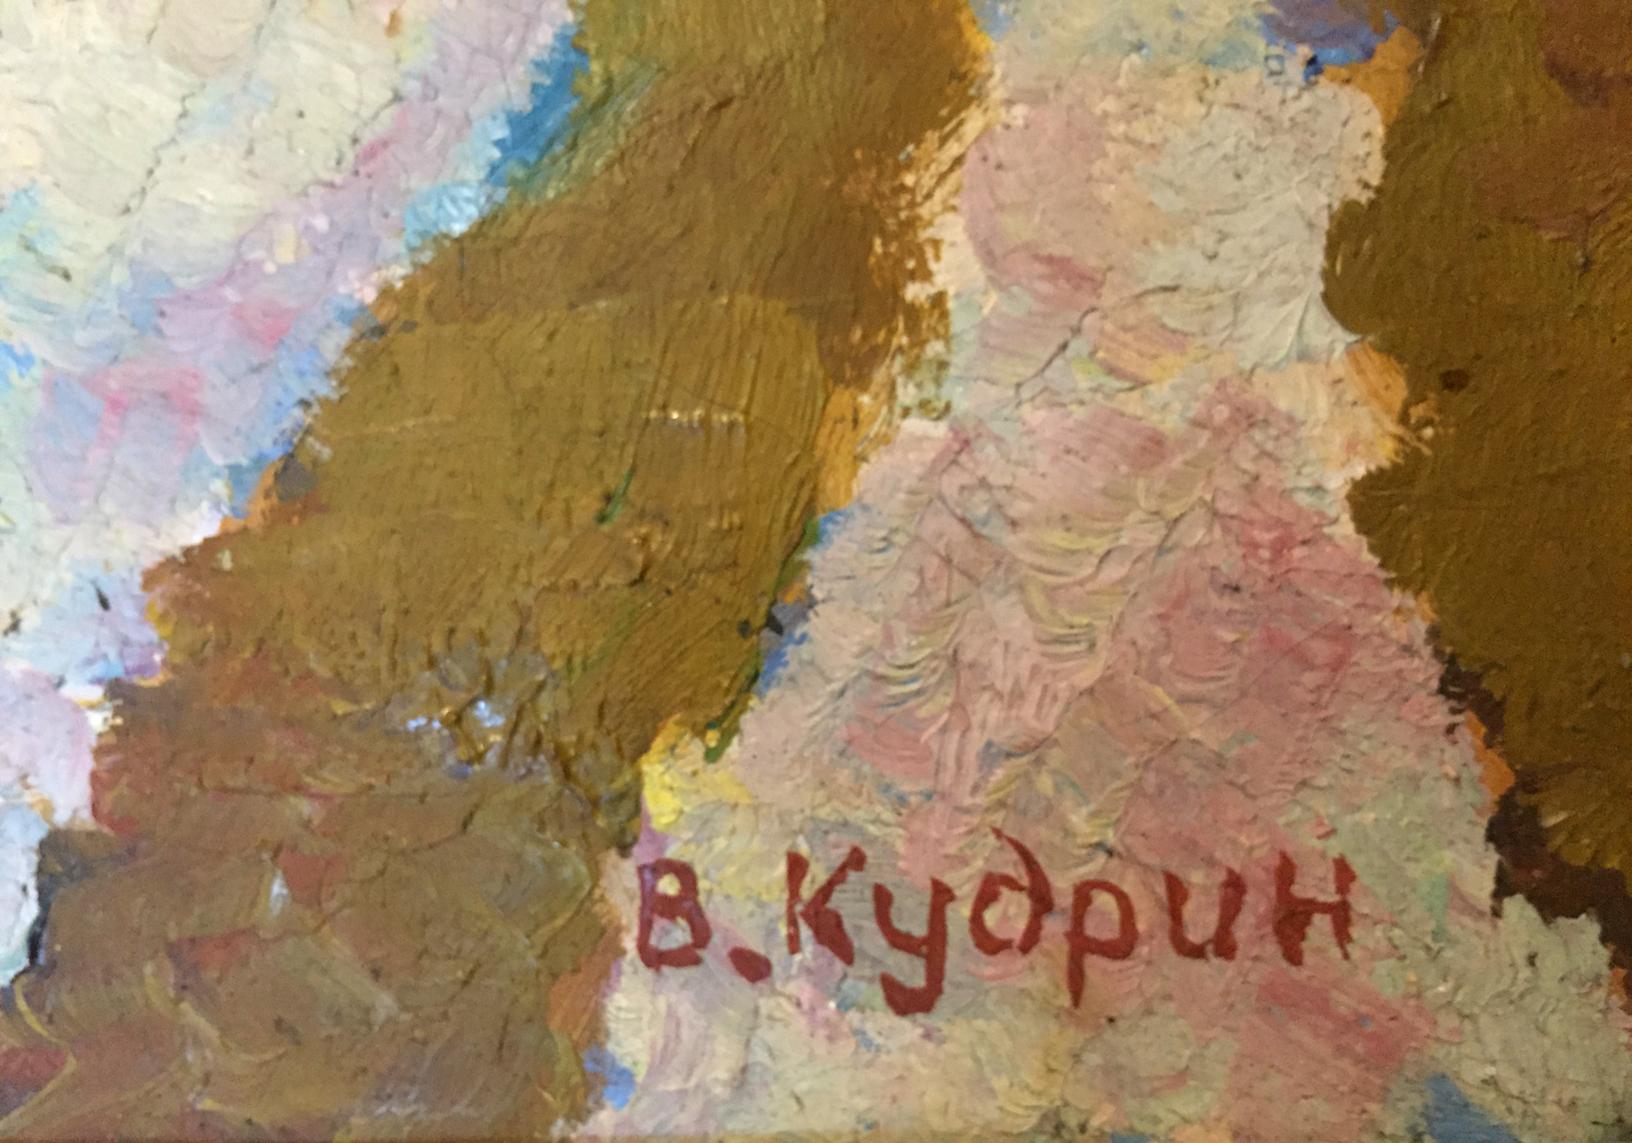 Kudrin's oil painting evokes the sensation of snow boiling